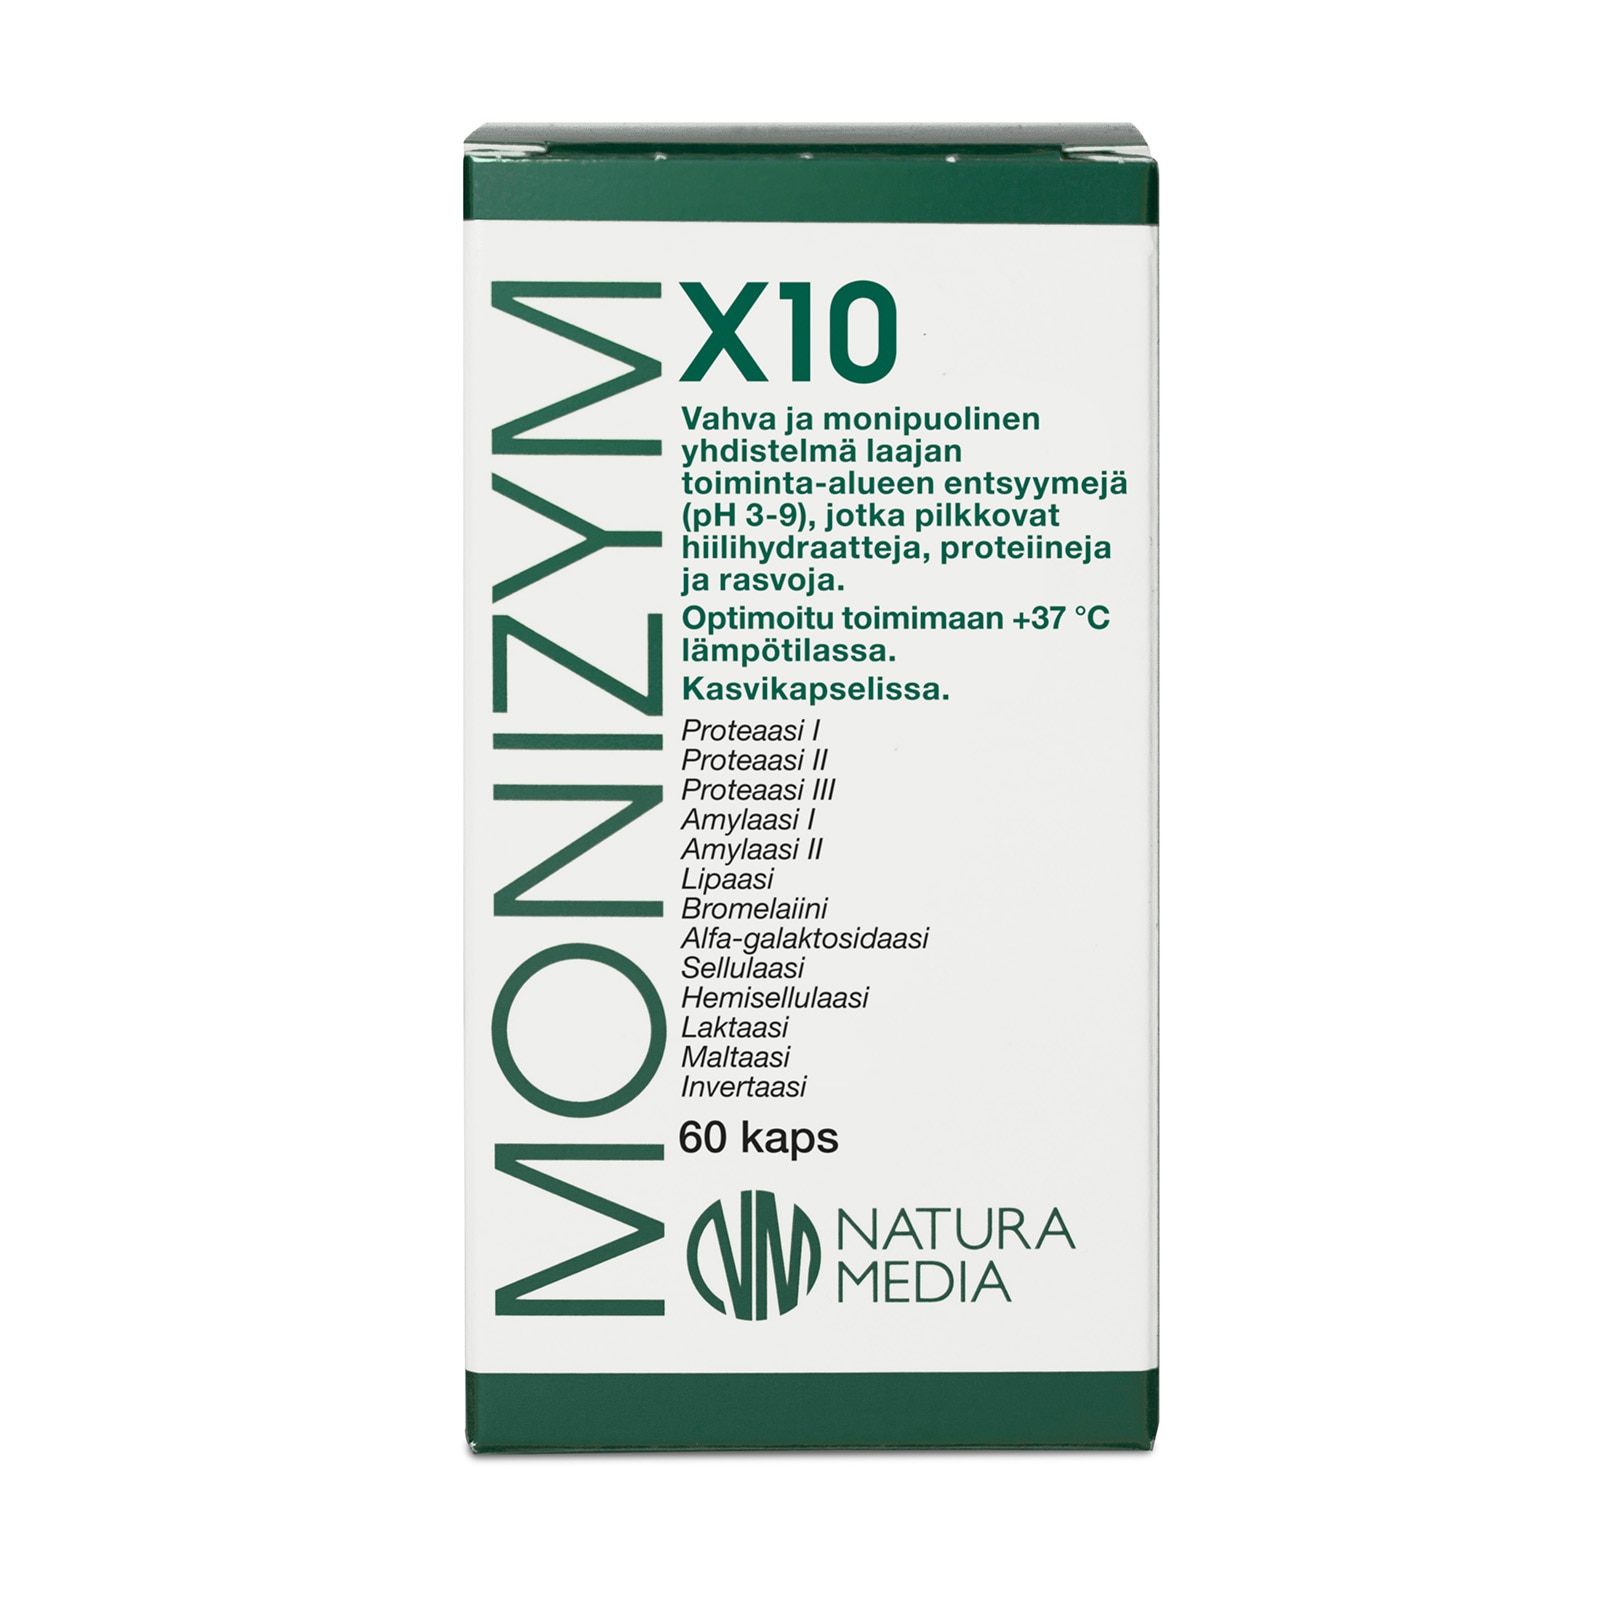 Monizym X10, ravintolisä ruuansulatukseen